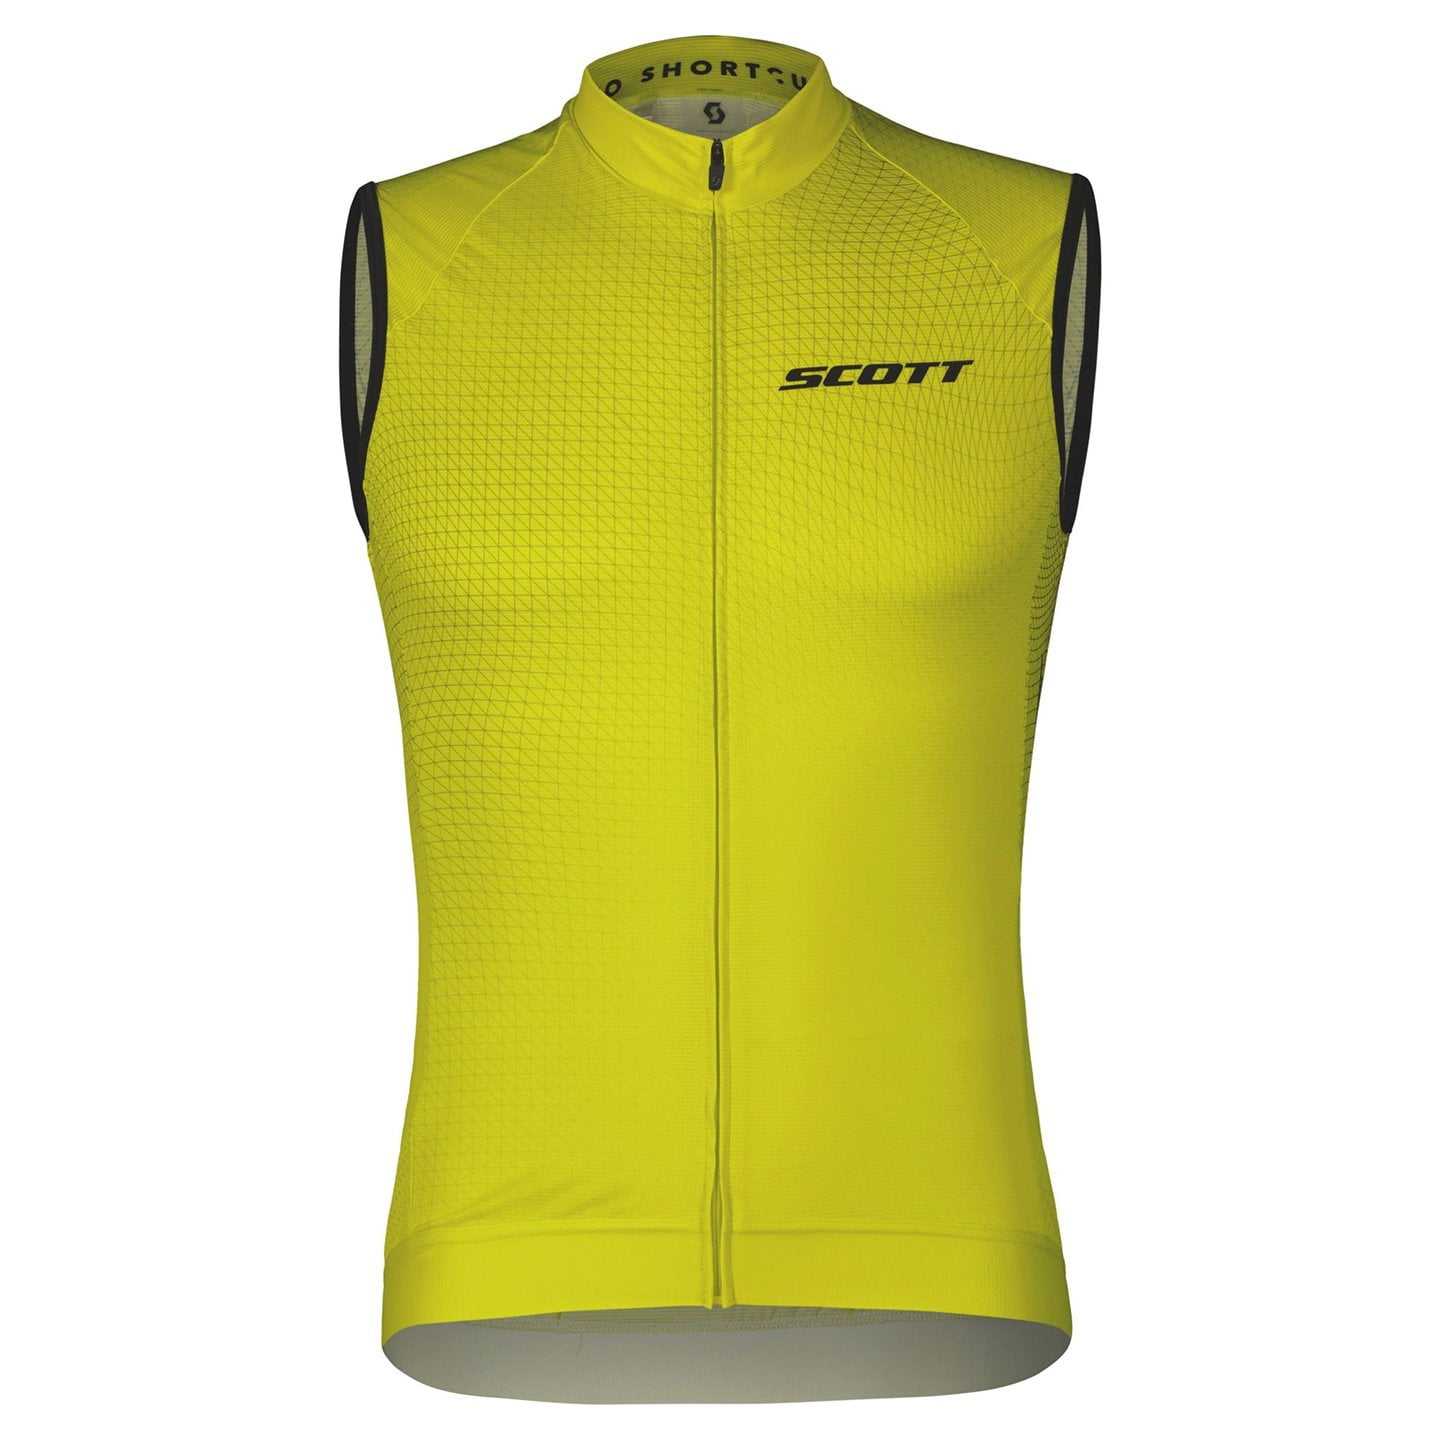 SCOTT RC Pro Sleeveless Cycling Jersey Sleeveless Jersey, for men, size 2XL, Cycling jersey, Cycle clothing